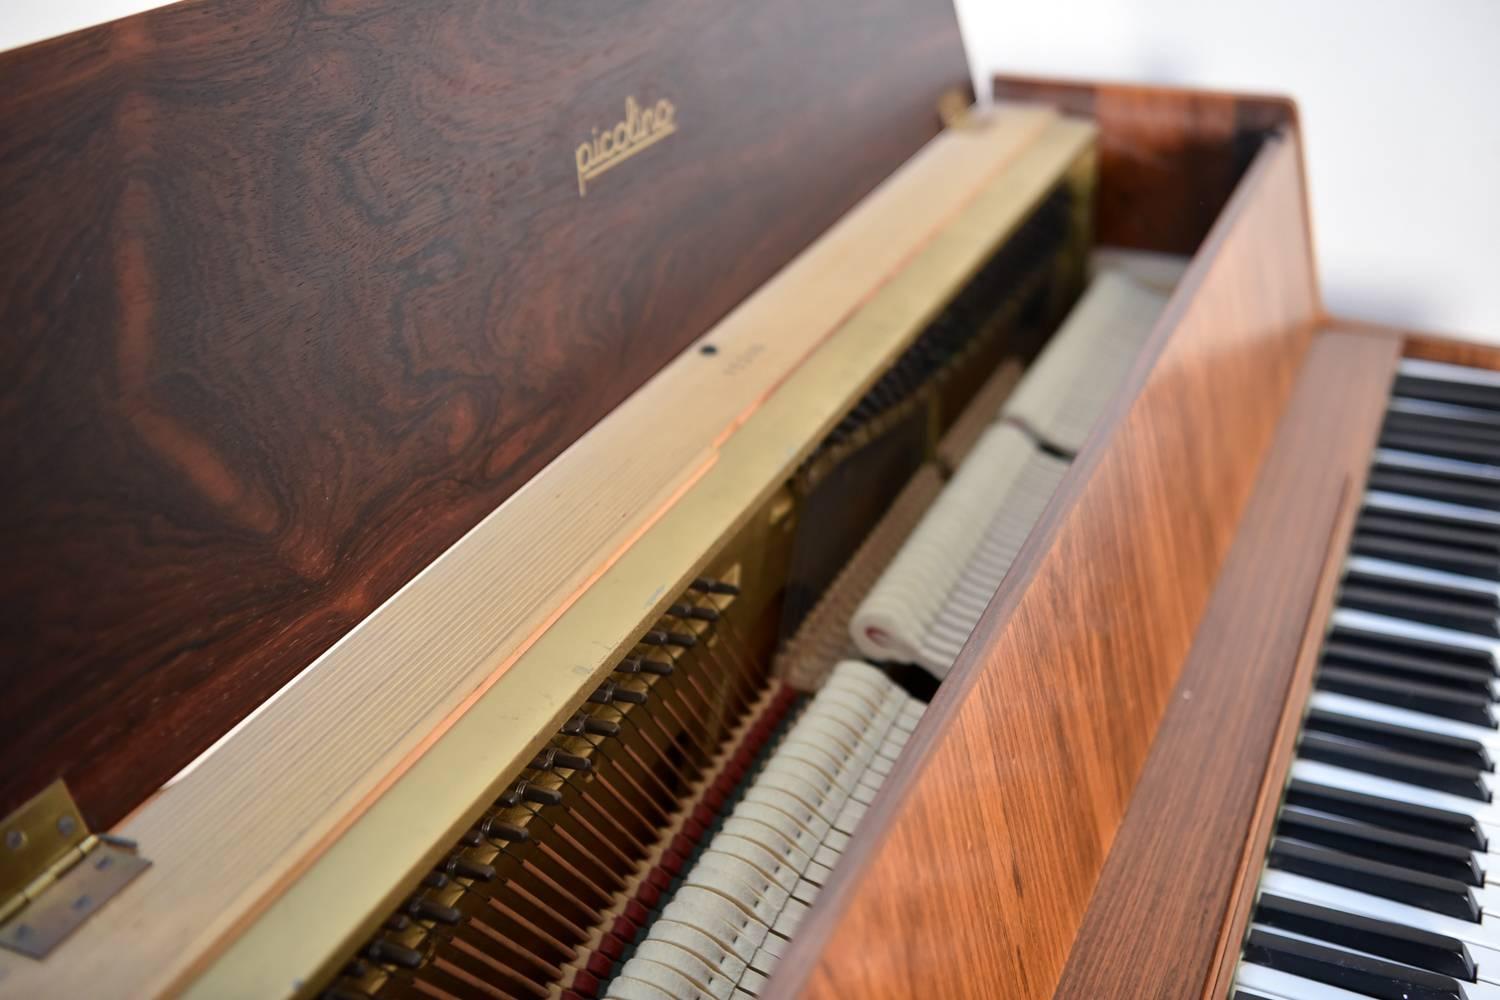 Danish Andreas Christiansen Picolino Small Compact Piano